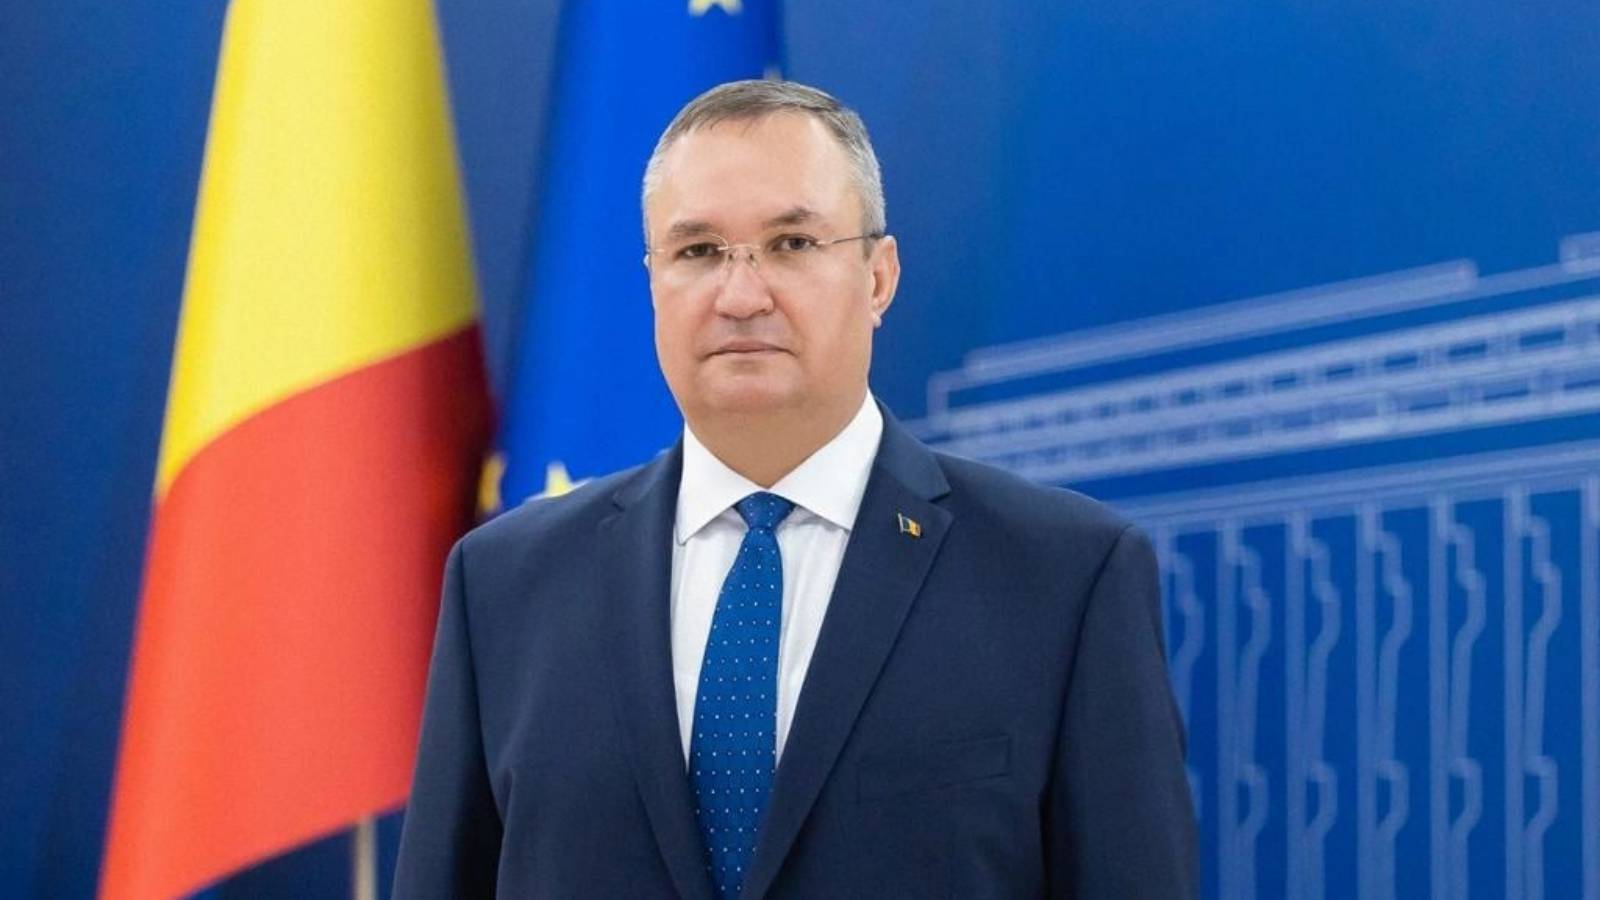 Rumänien har den högsta ekonomiska tillväxten i EU, enligt premiärminister Nicolae Ciuca